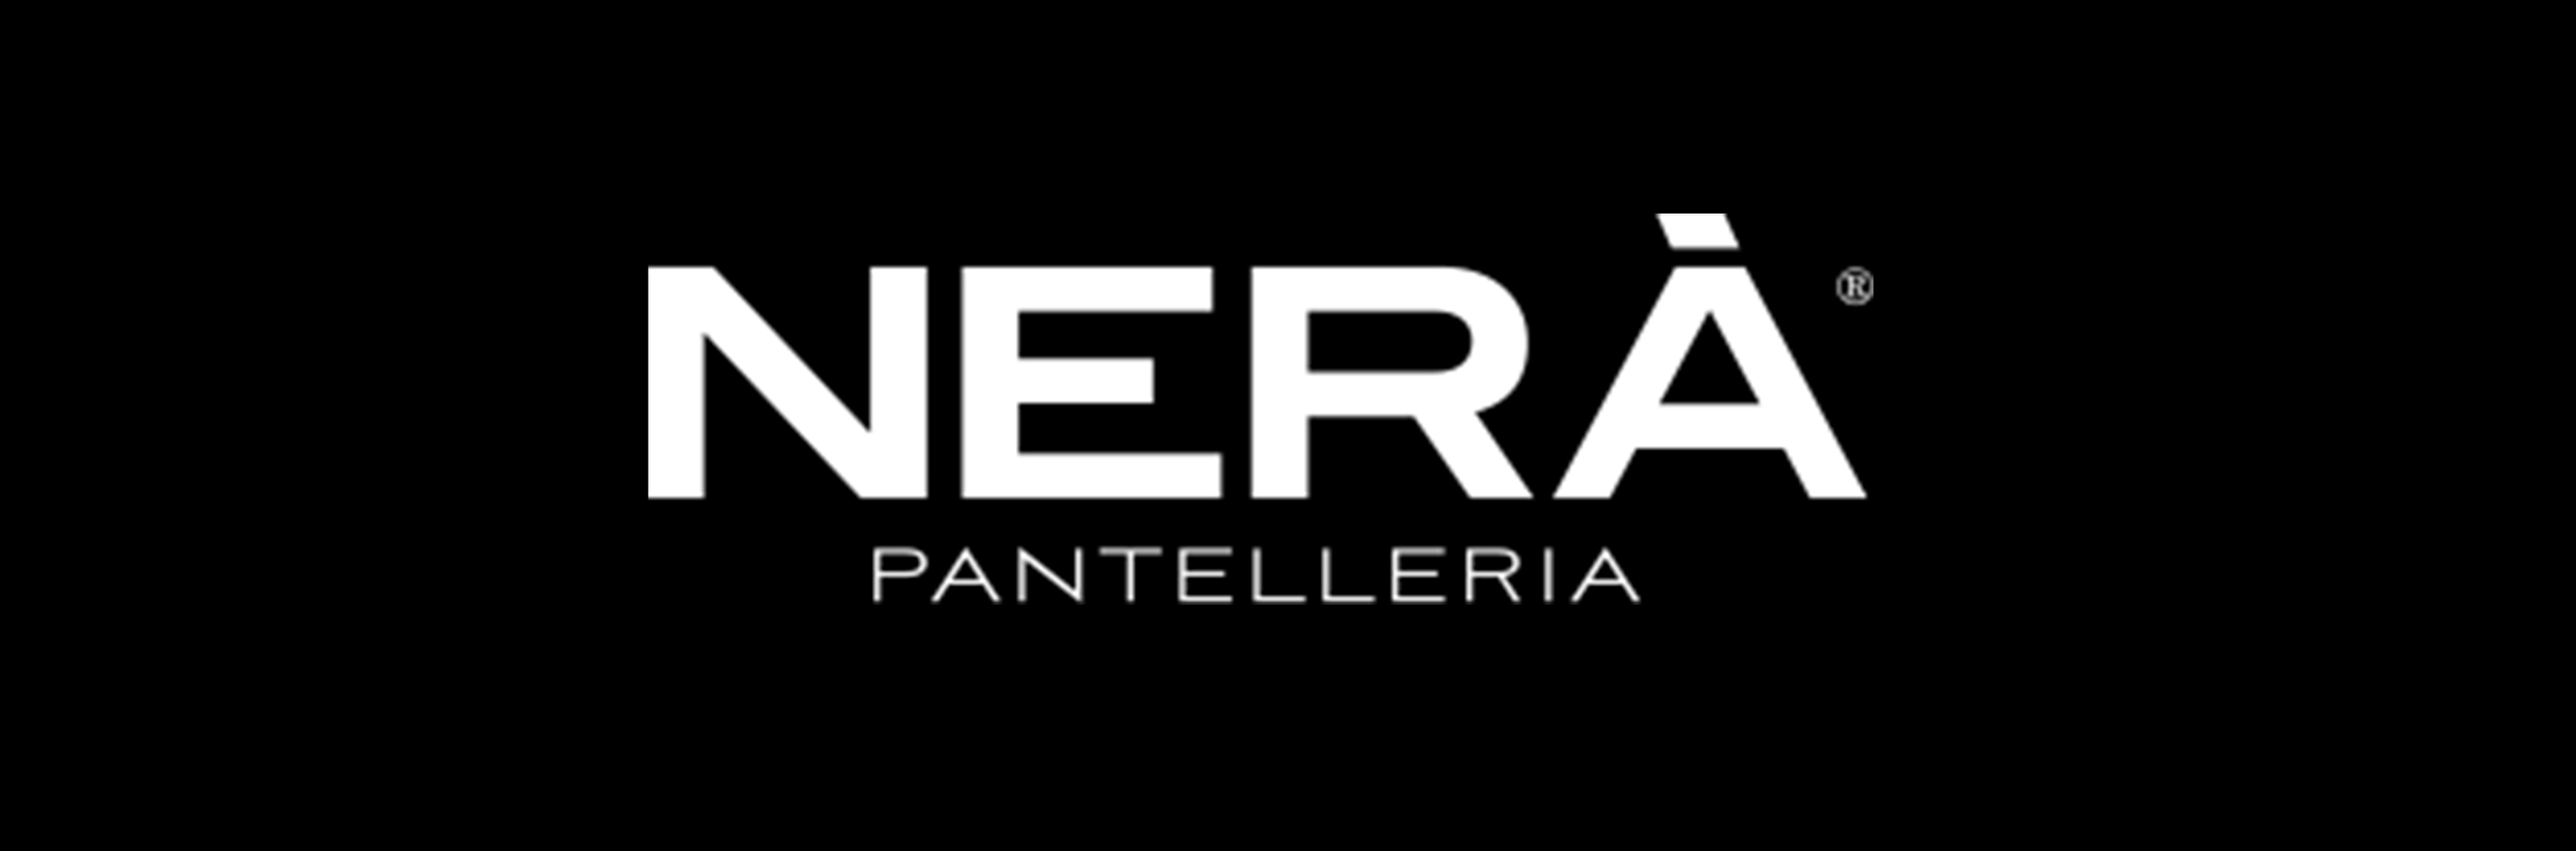 Nerà - Pantelleria